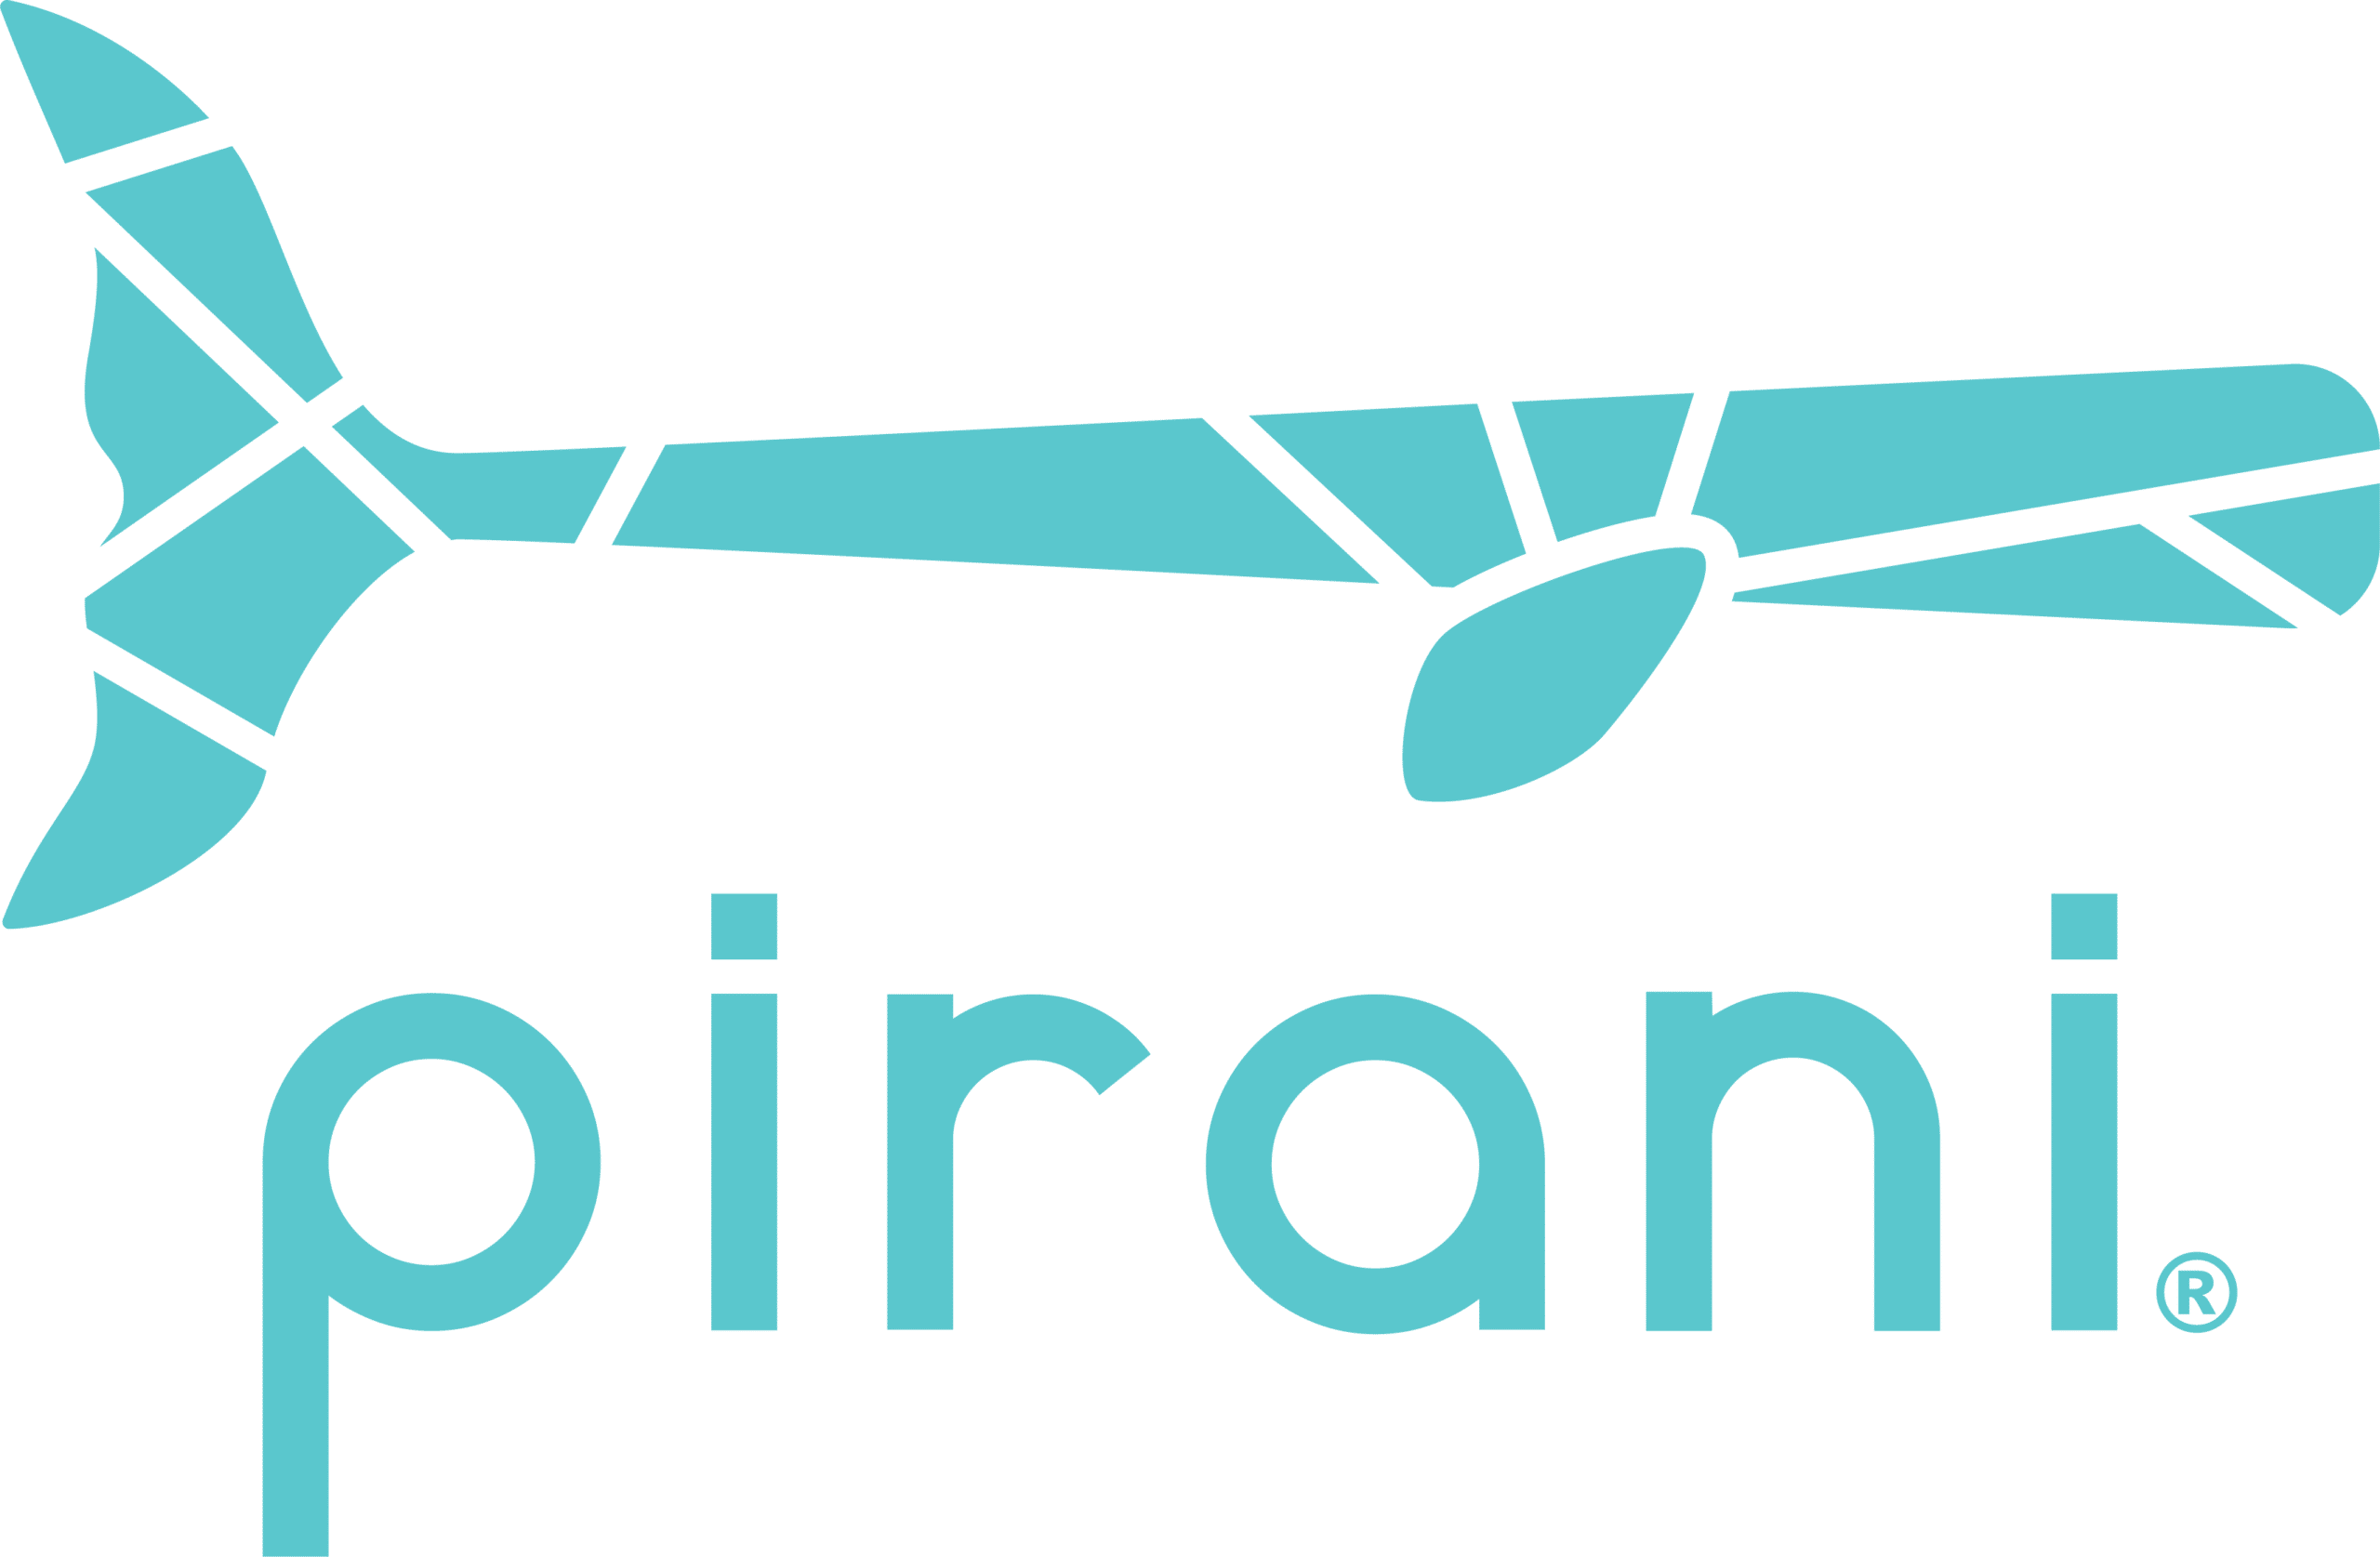 Pirani